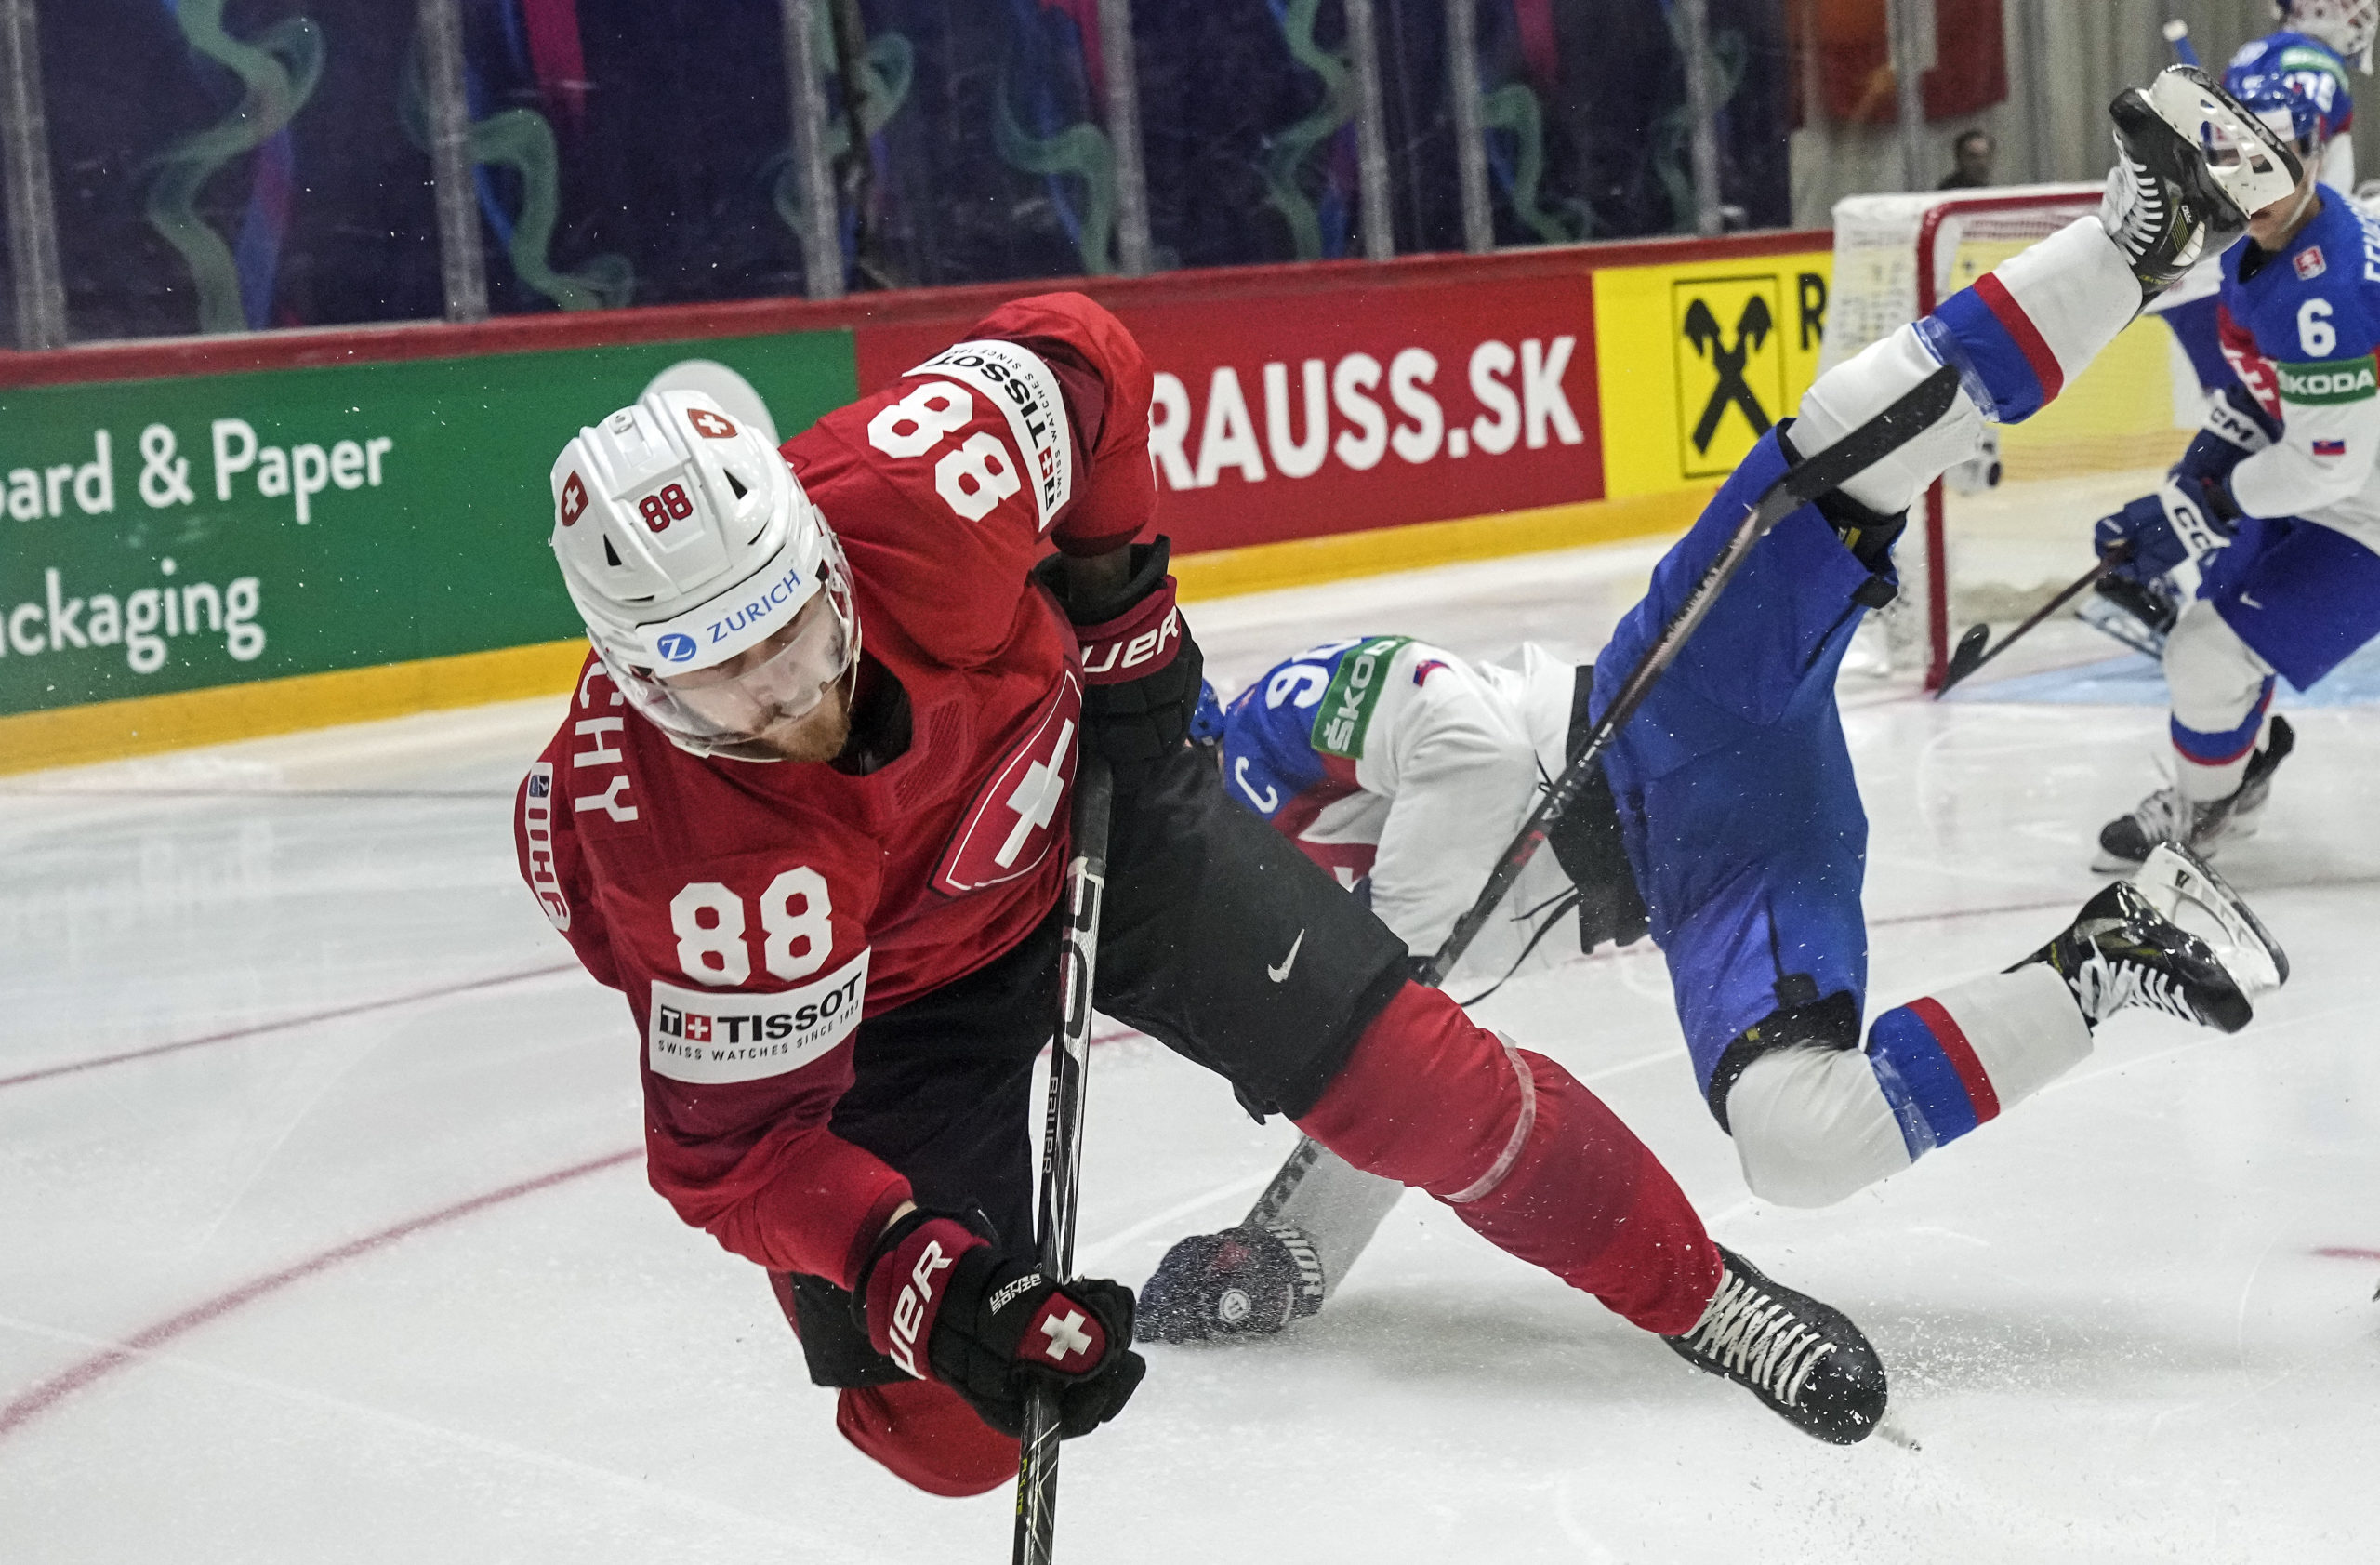 MS v hokeji 2022: Slovensko tesne podľahlo Švajčiarsku, zranil sa rozhodca a na konci nebola využitá dlhá presilovka (video+foto)